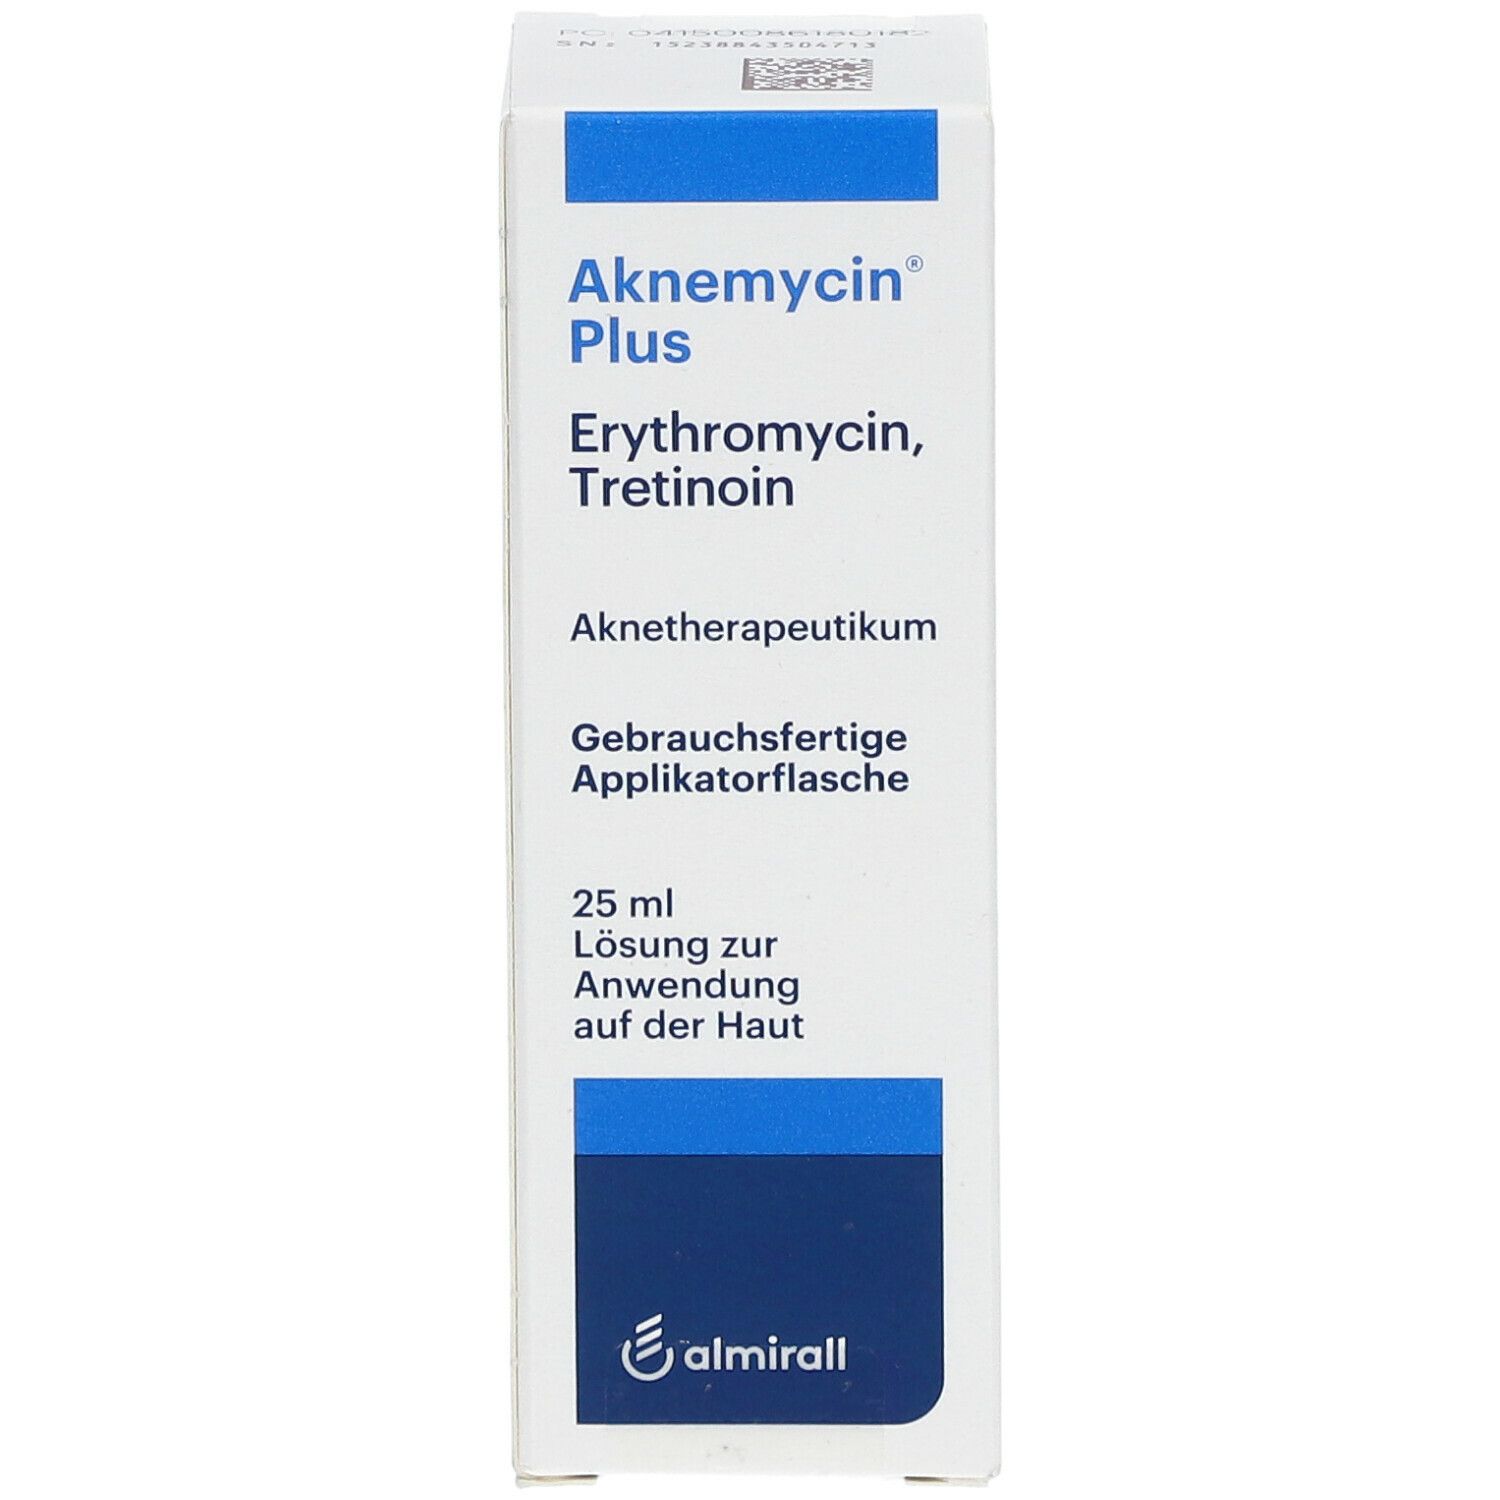 Aknemycin® Plus